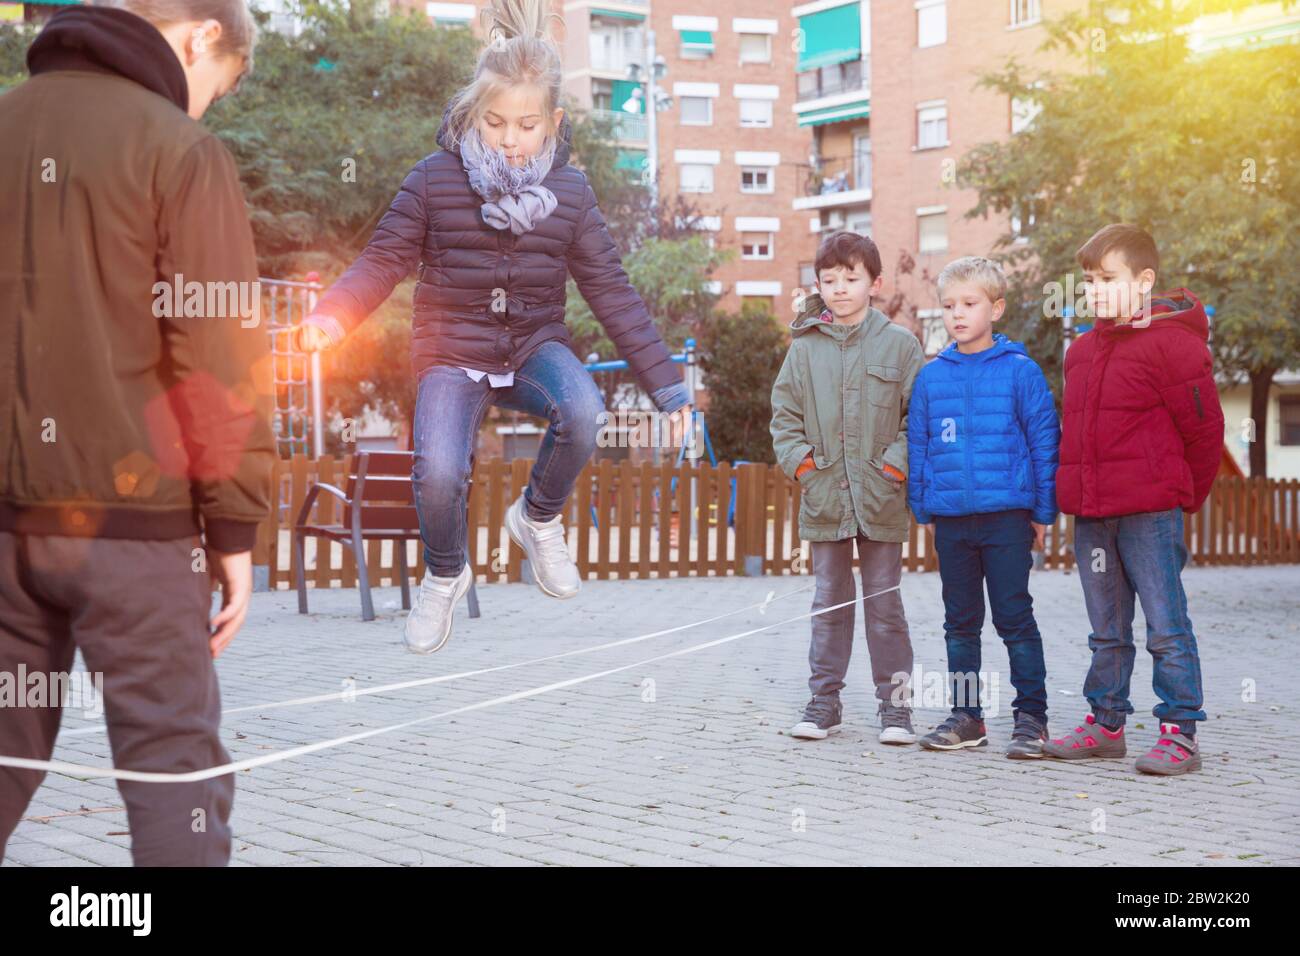 Les enfants sauter à travers une corde élastique dans une aire de